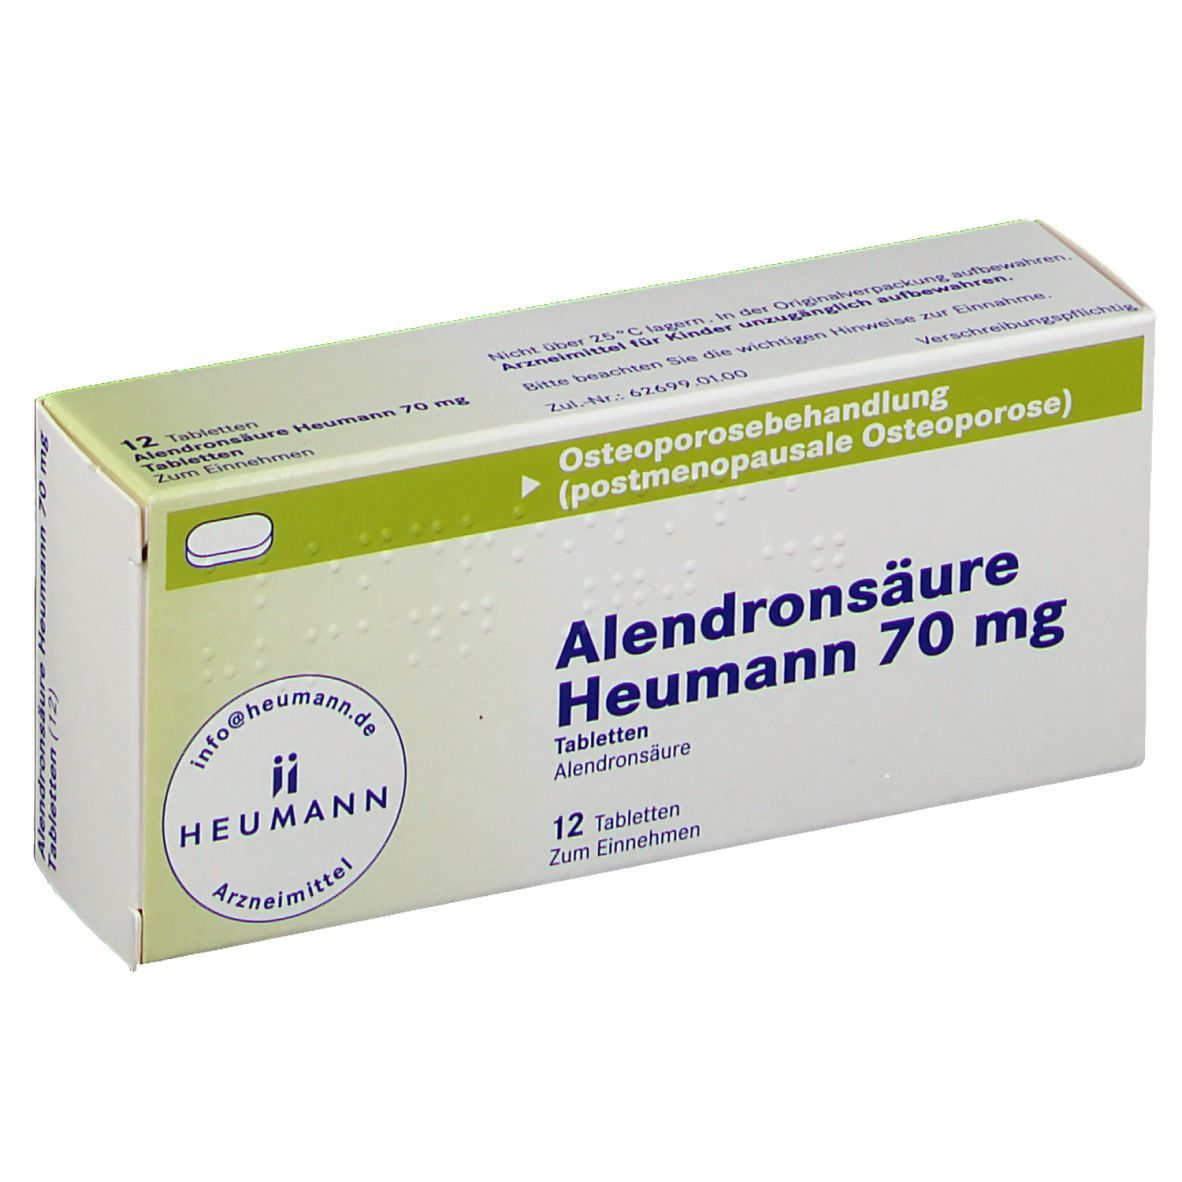 Alendronsäure Heumann 70 mg